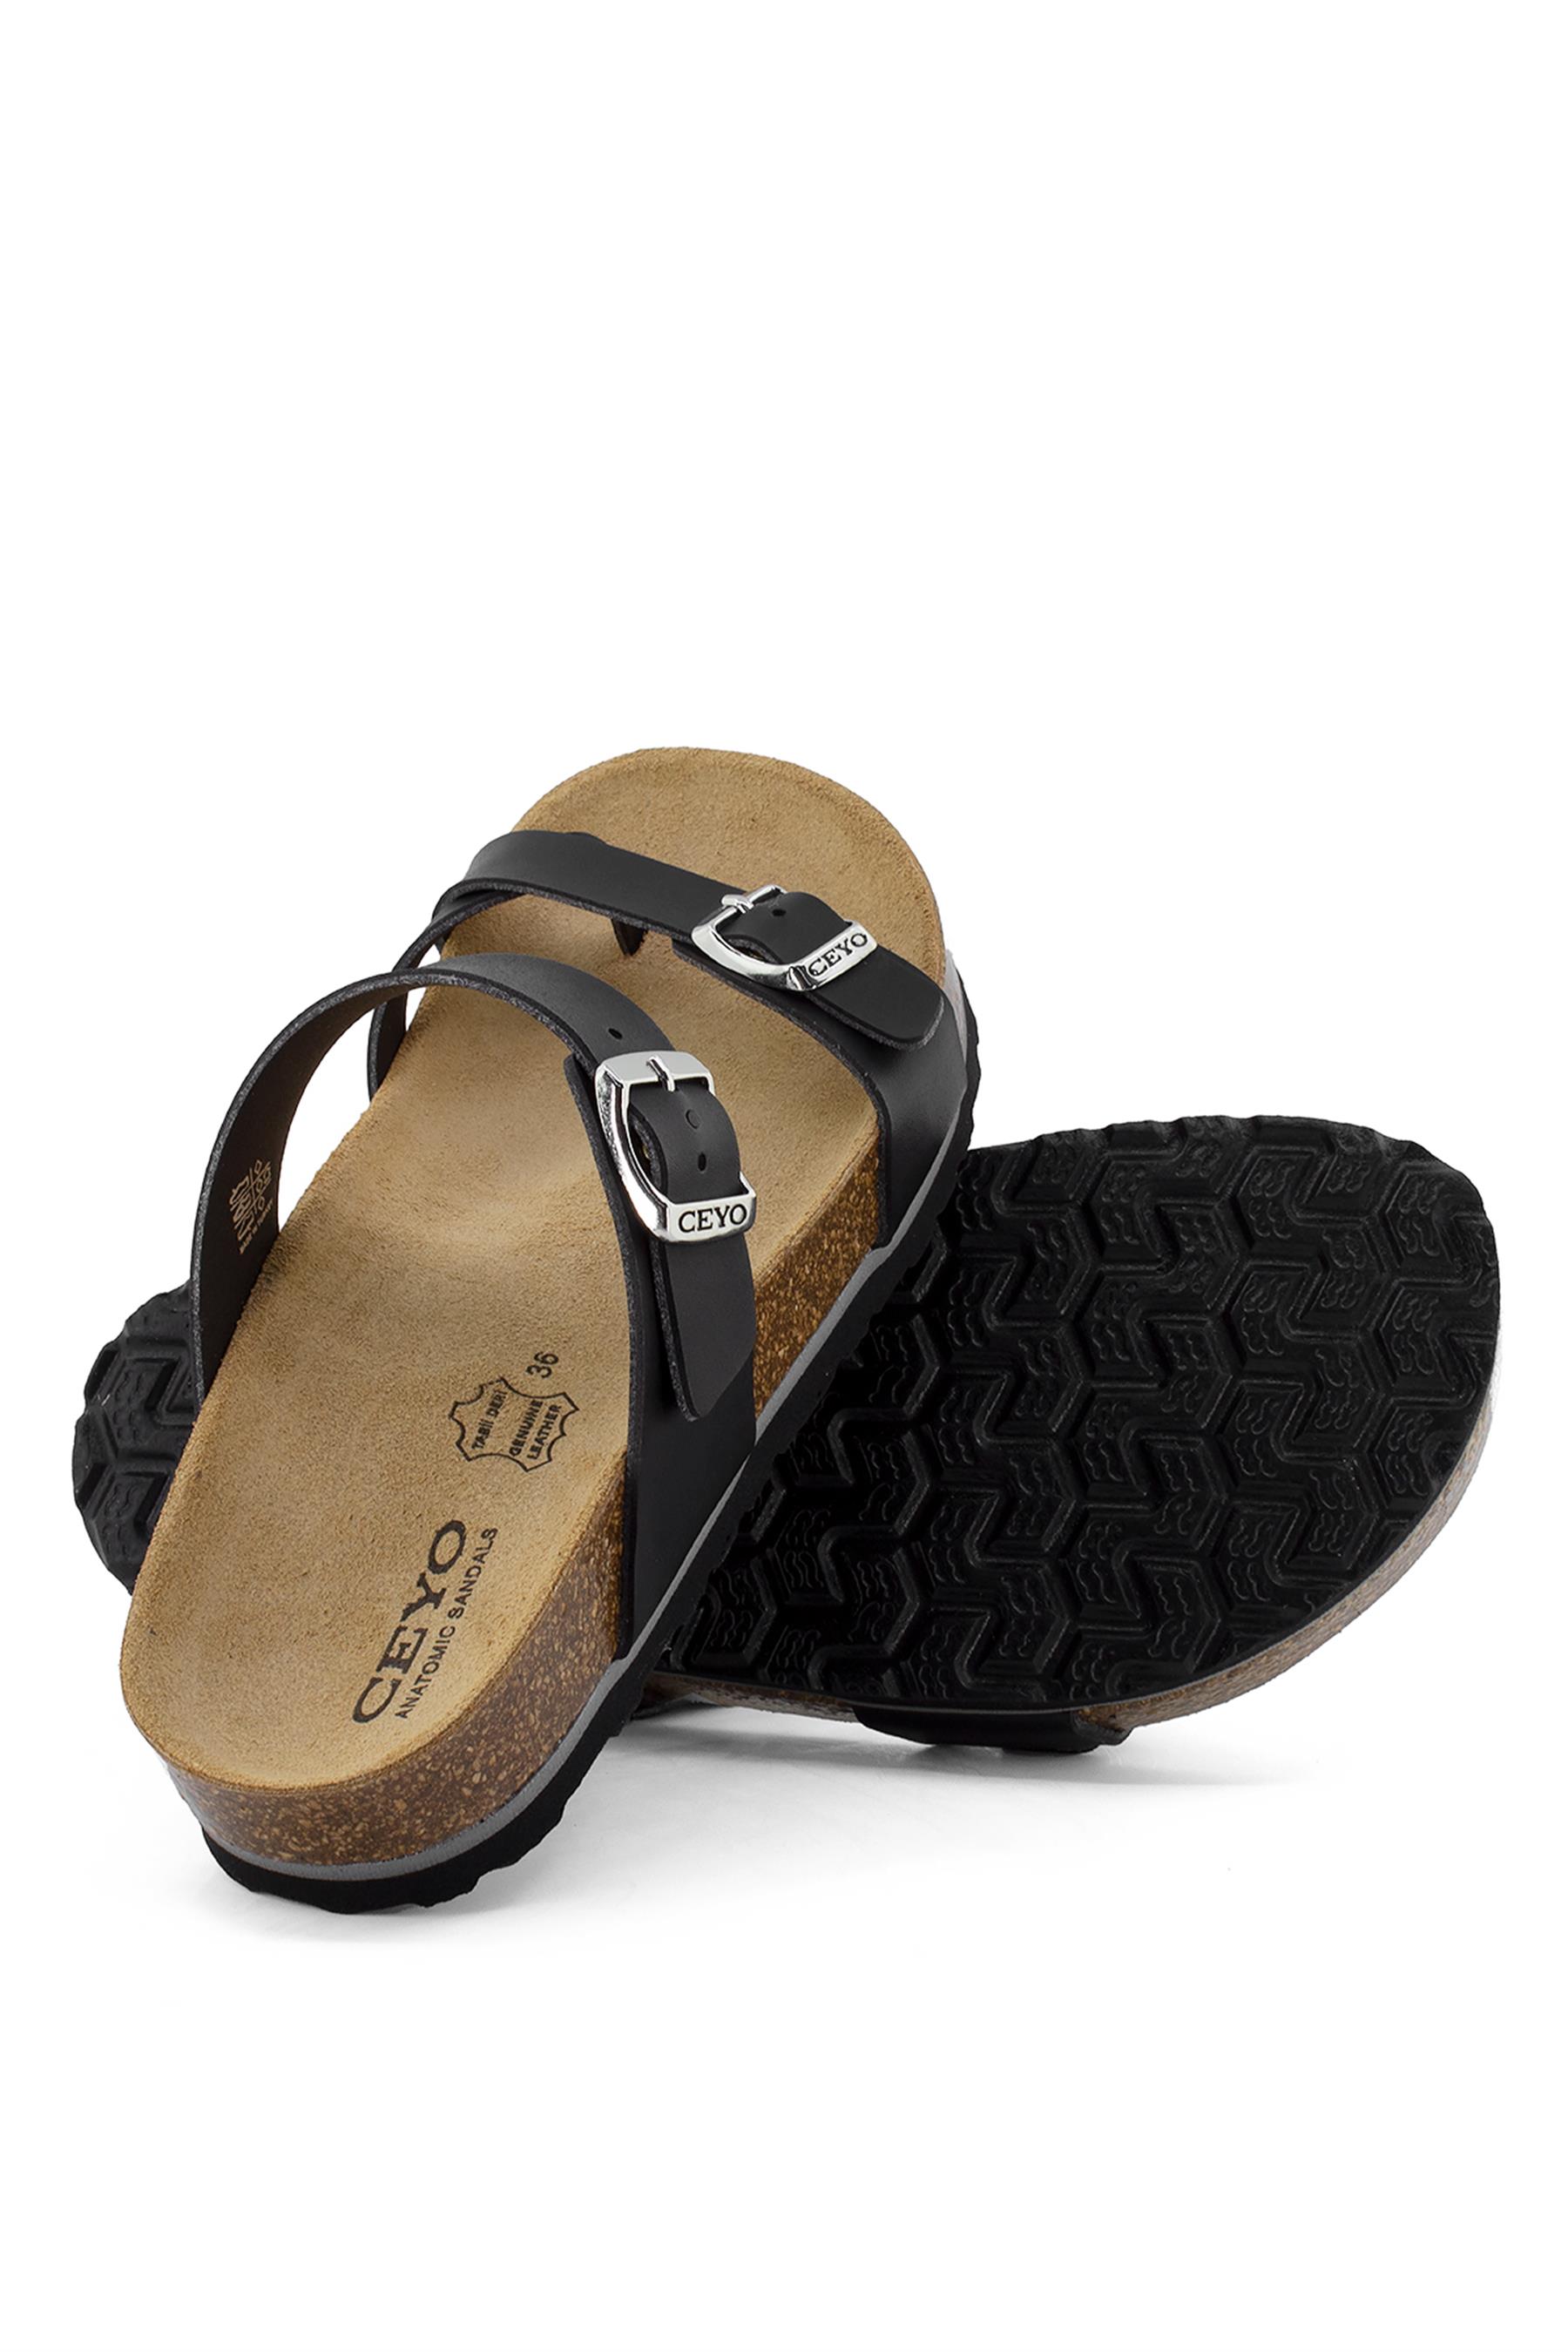 Ceyo 9910-Z34 Kadın Terlik Siyah - Ayakkabı Fuarı Elit